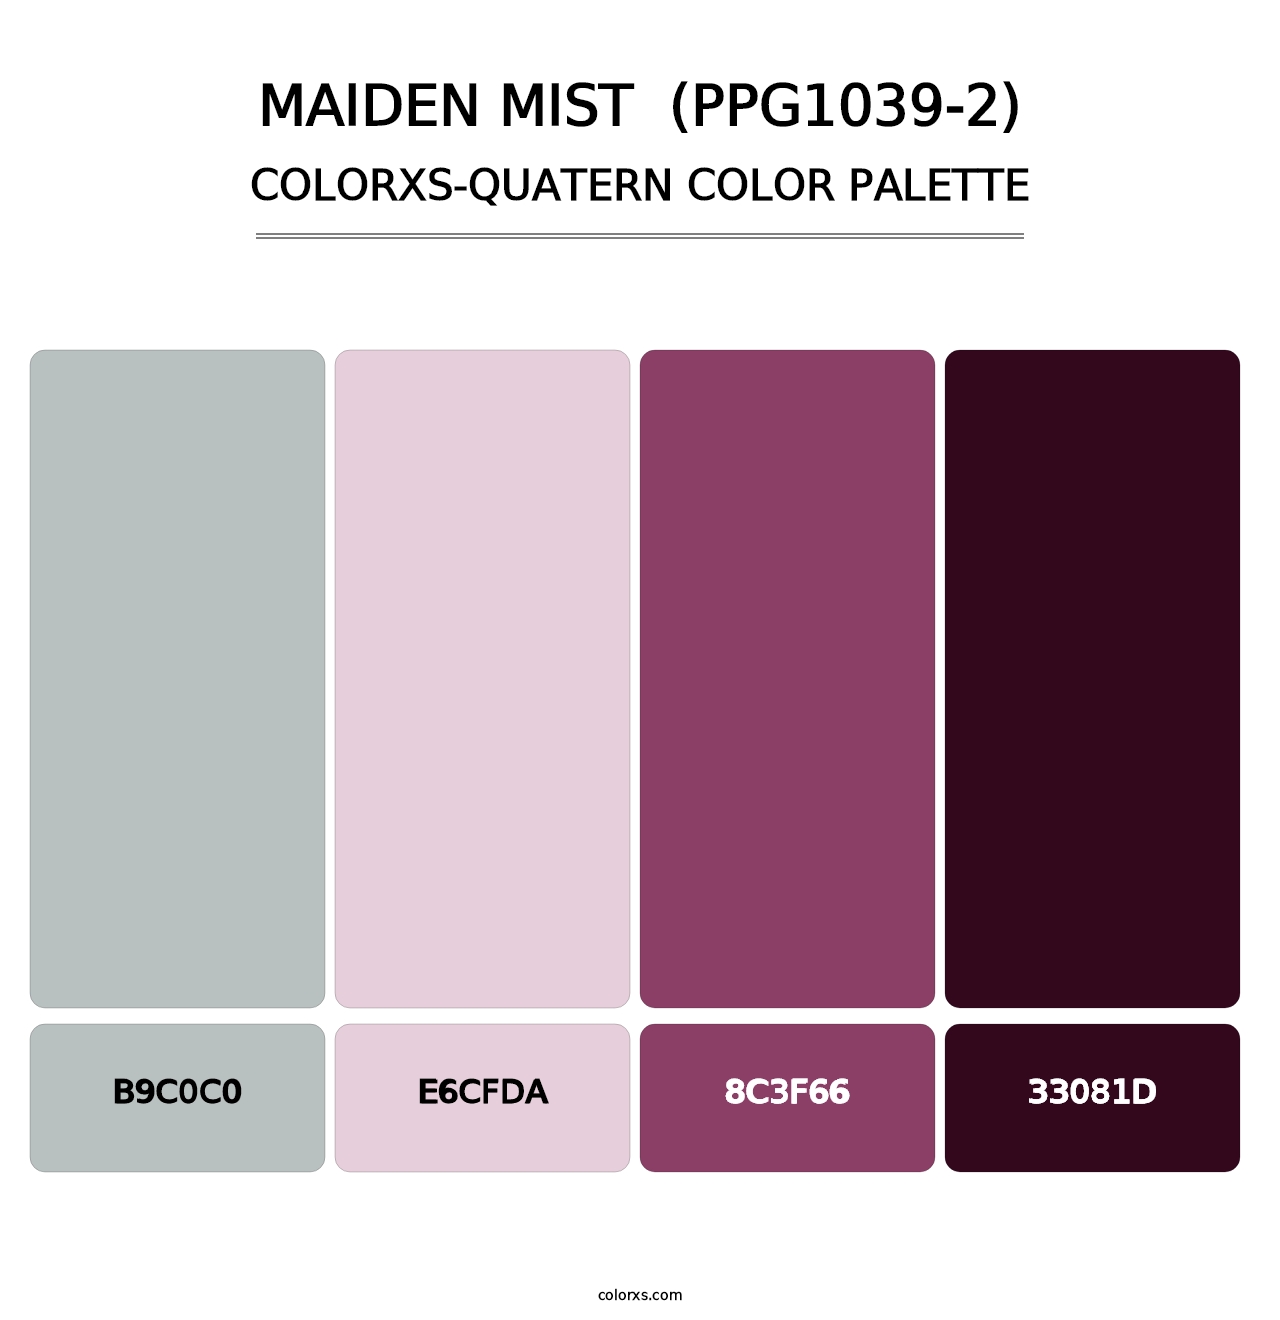 Maiden Mist  (PPG1039-2) - Colorxs Quatern Palette